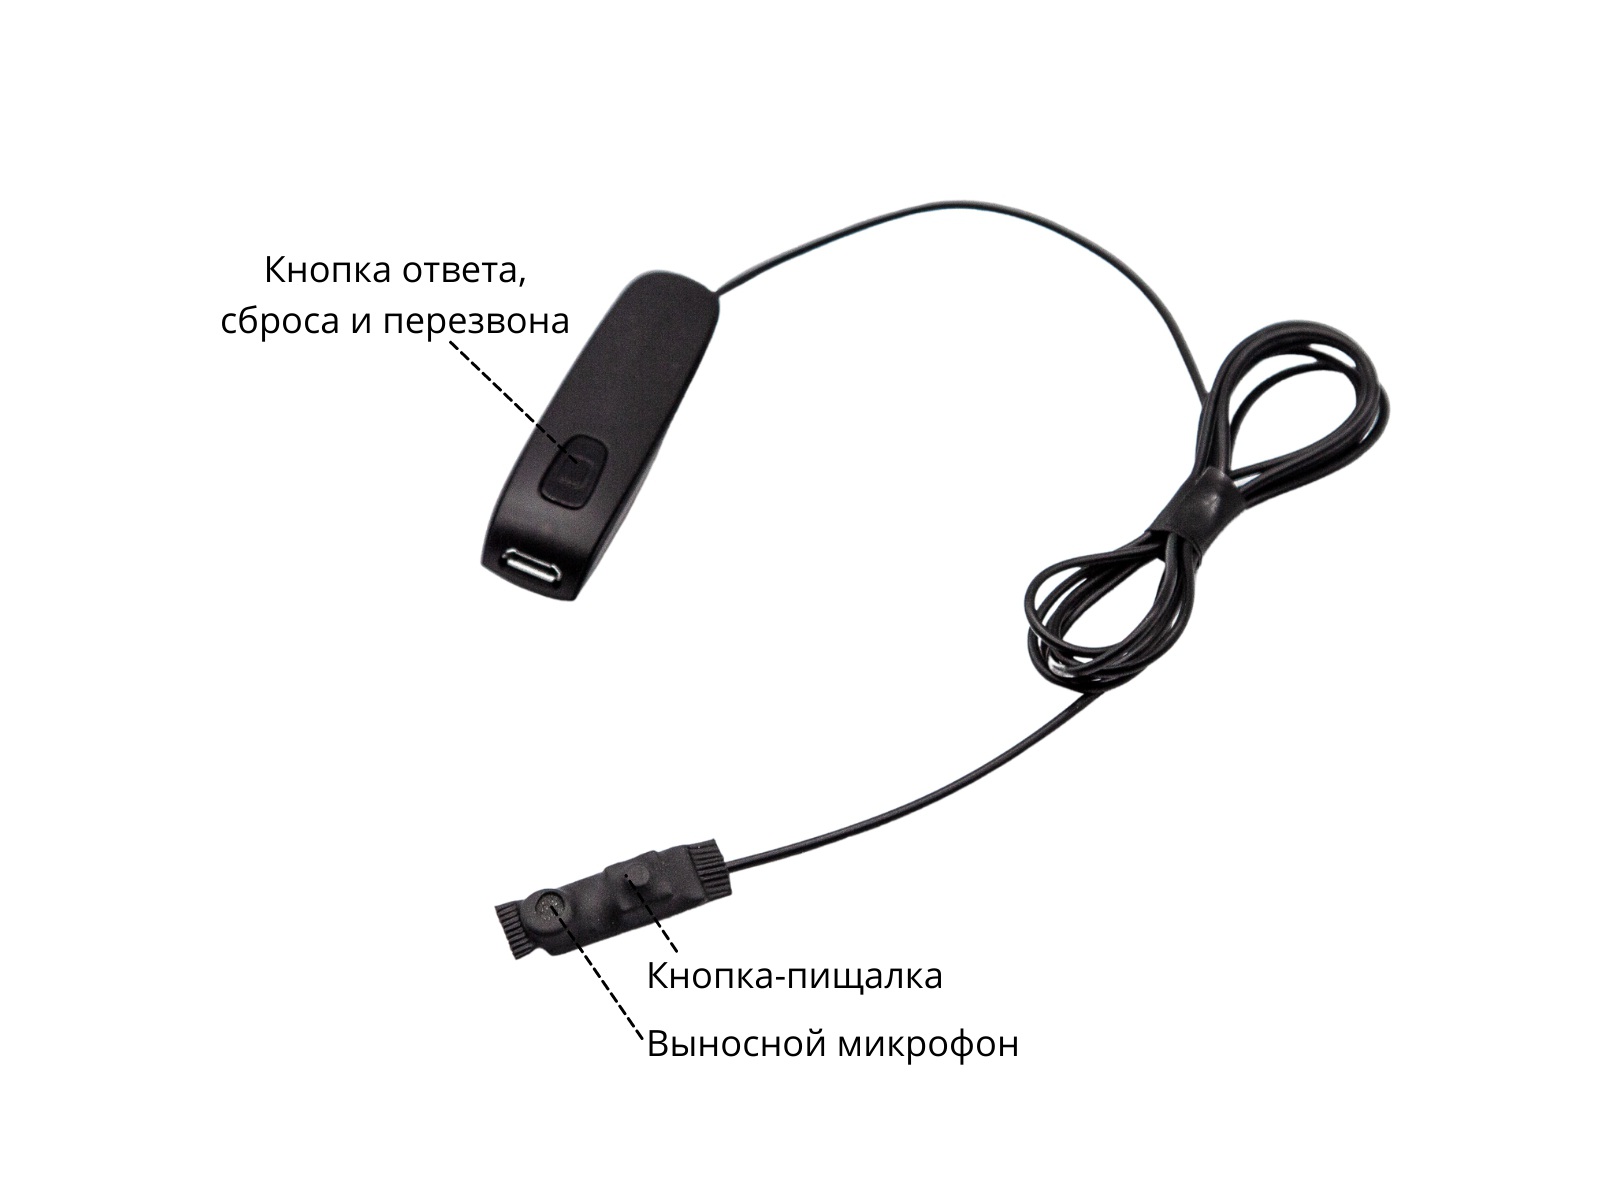 Bluetooth Box Basic с кнопкой-пищалкой и капсульным микронаушником K1 10мм